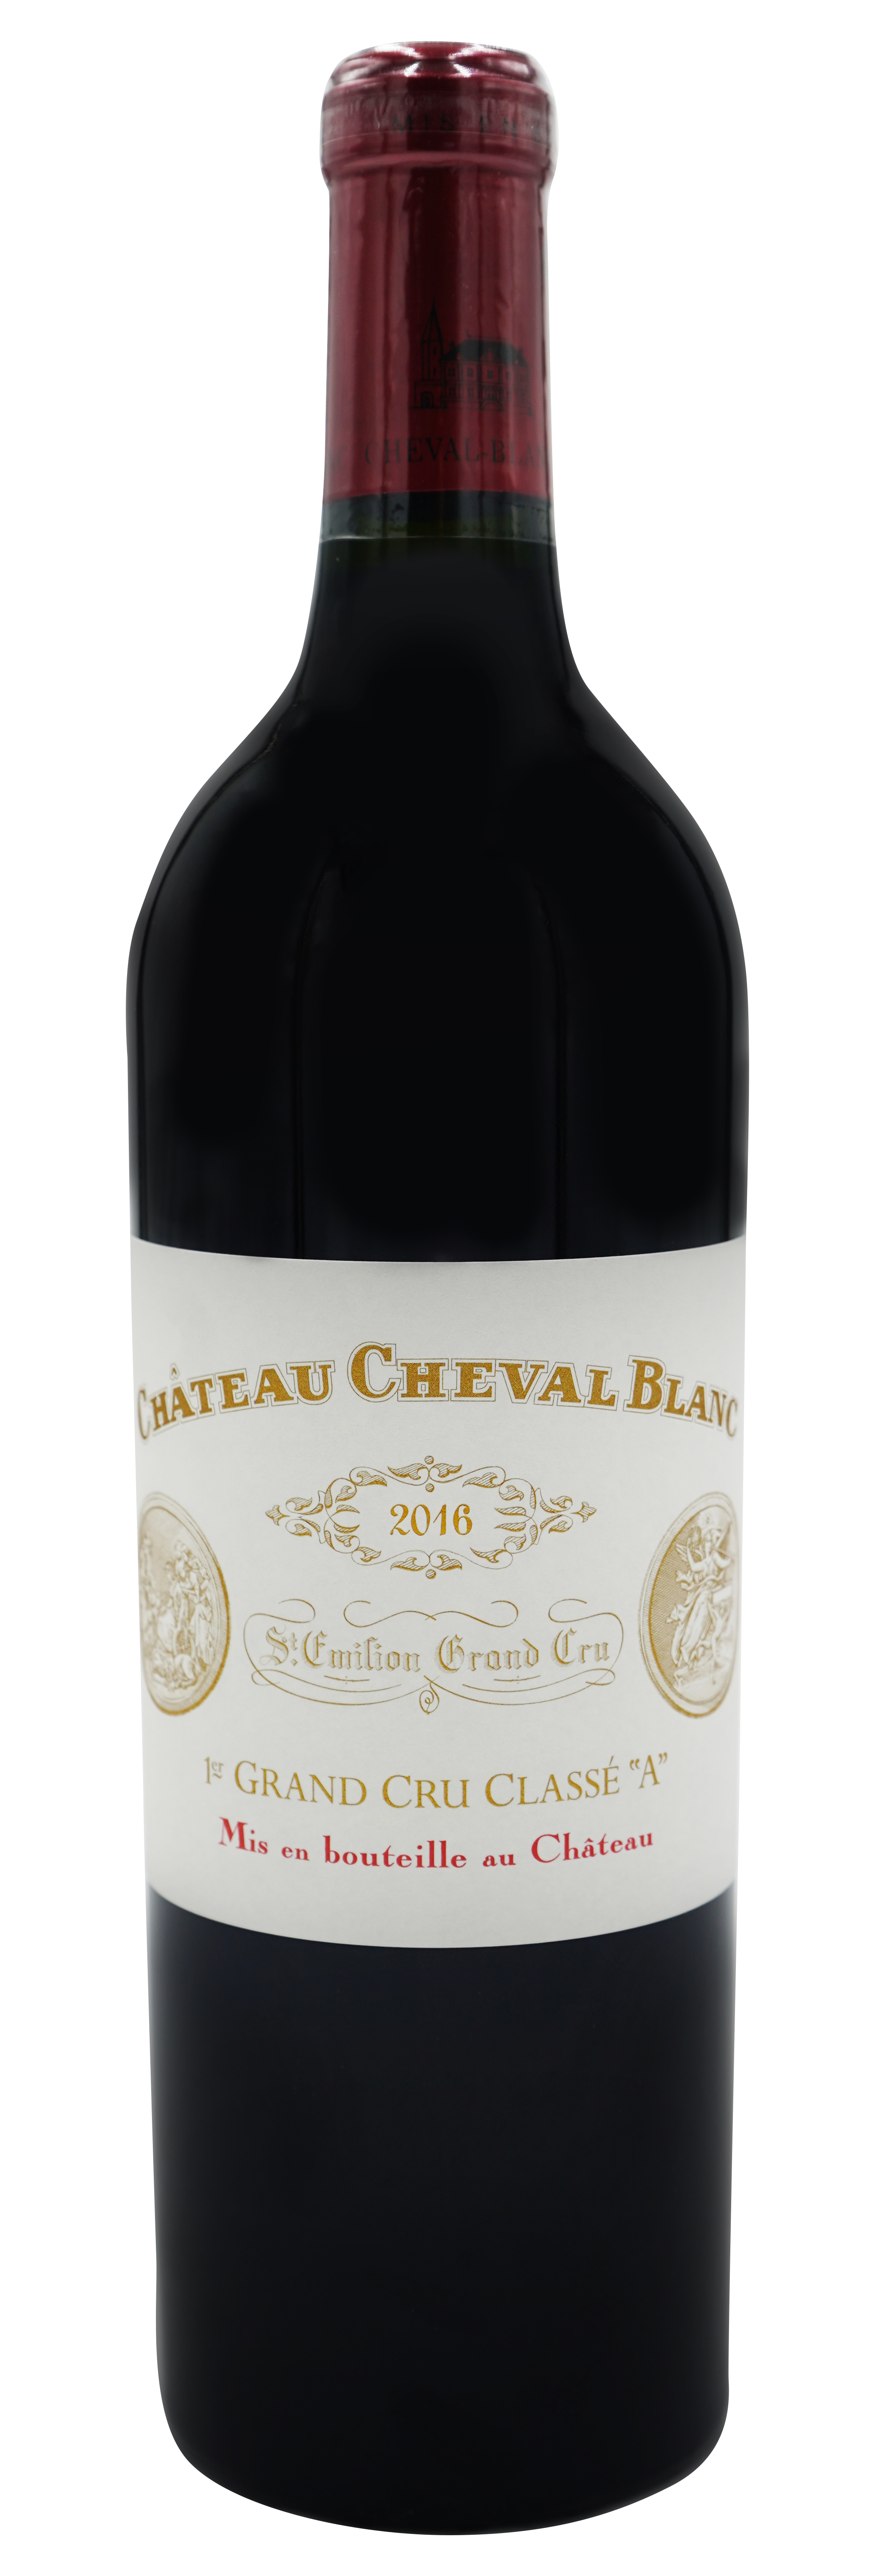 Château Cheval blanc 2016